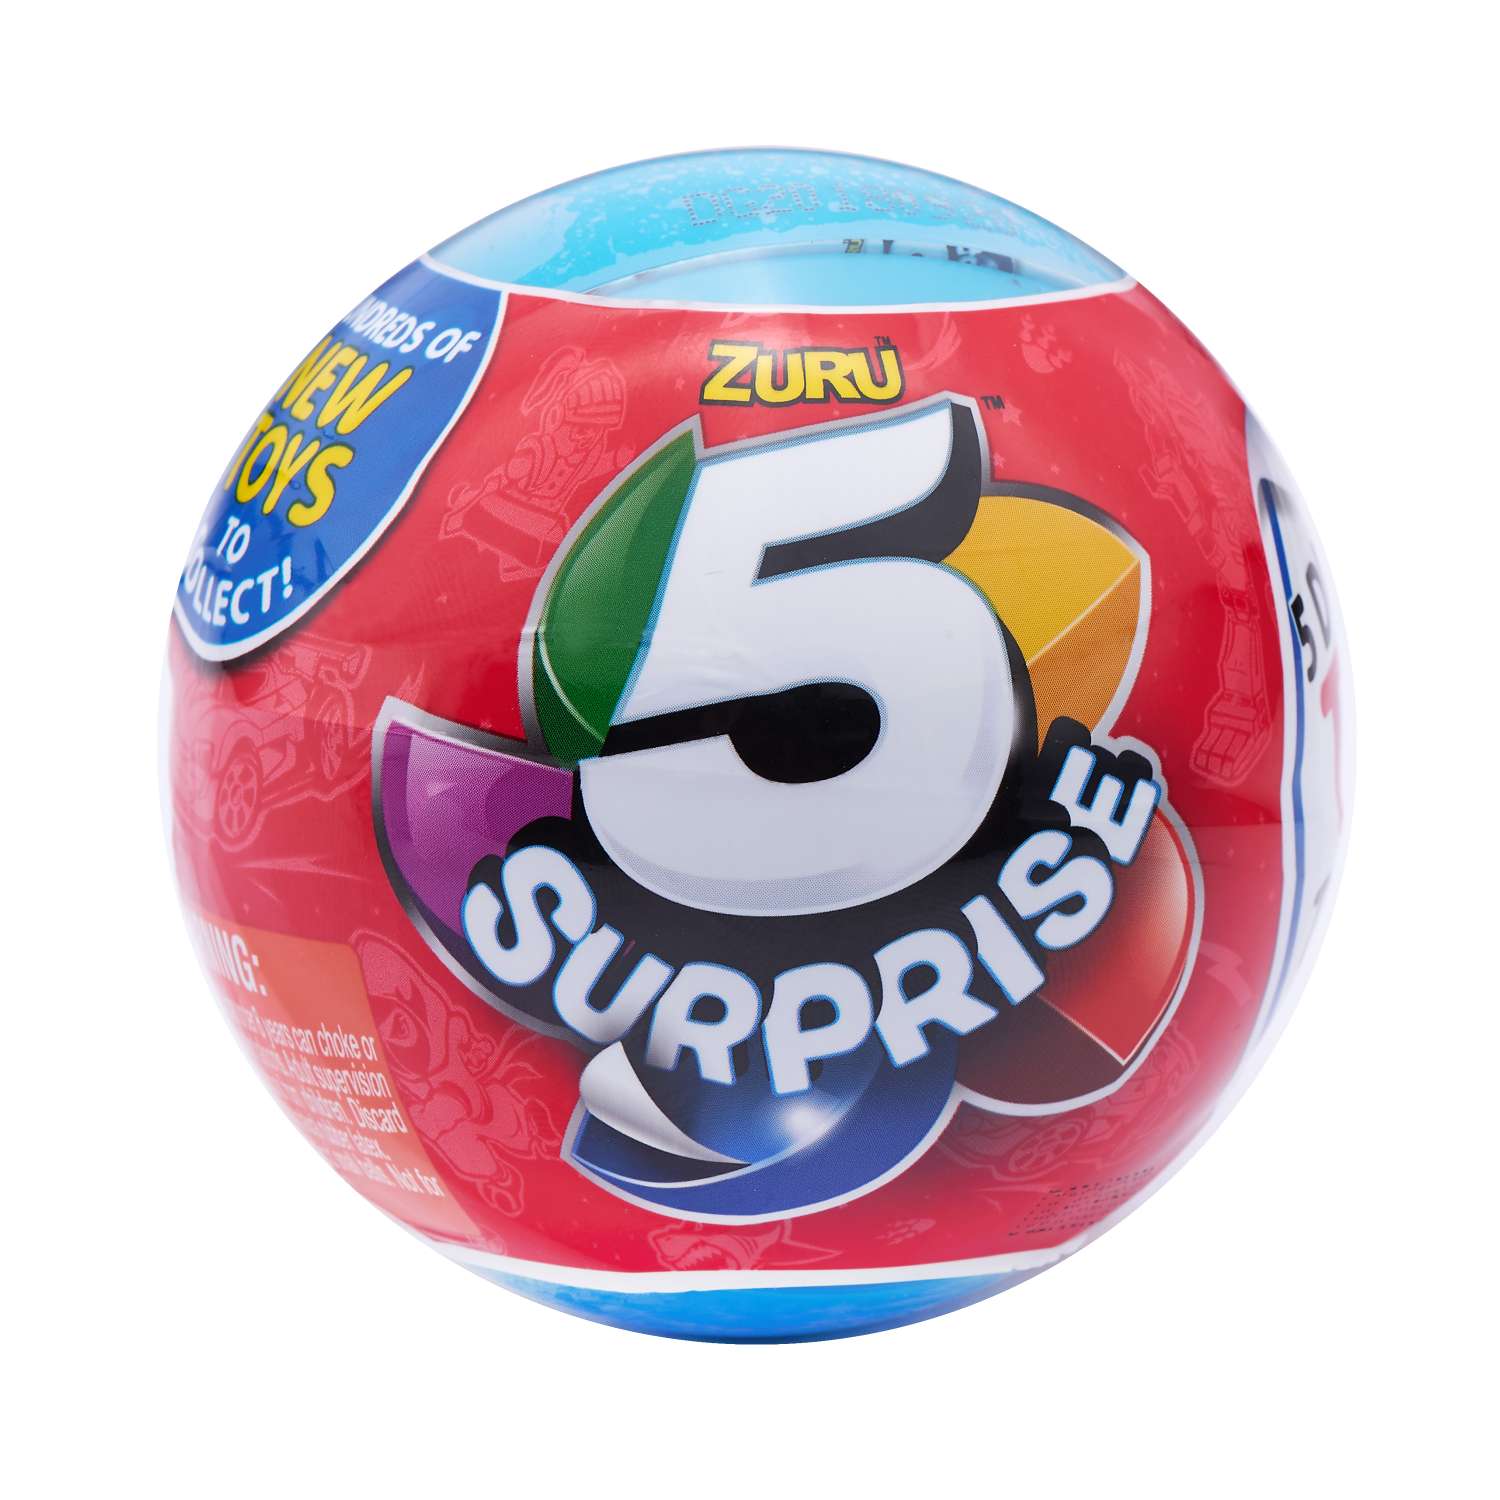 Игрушка Zuru 5 surprise Шар-сюрприз в непрозрачной упаковке (Сюрприз) 7701 - фото 1